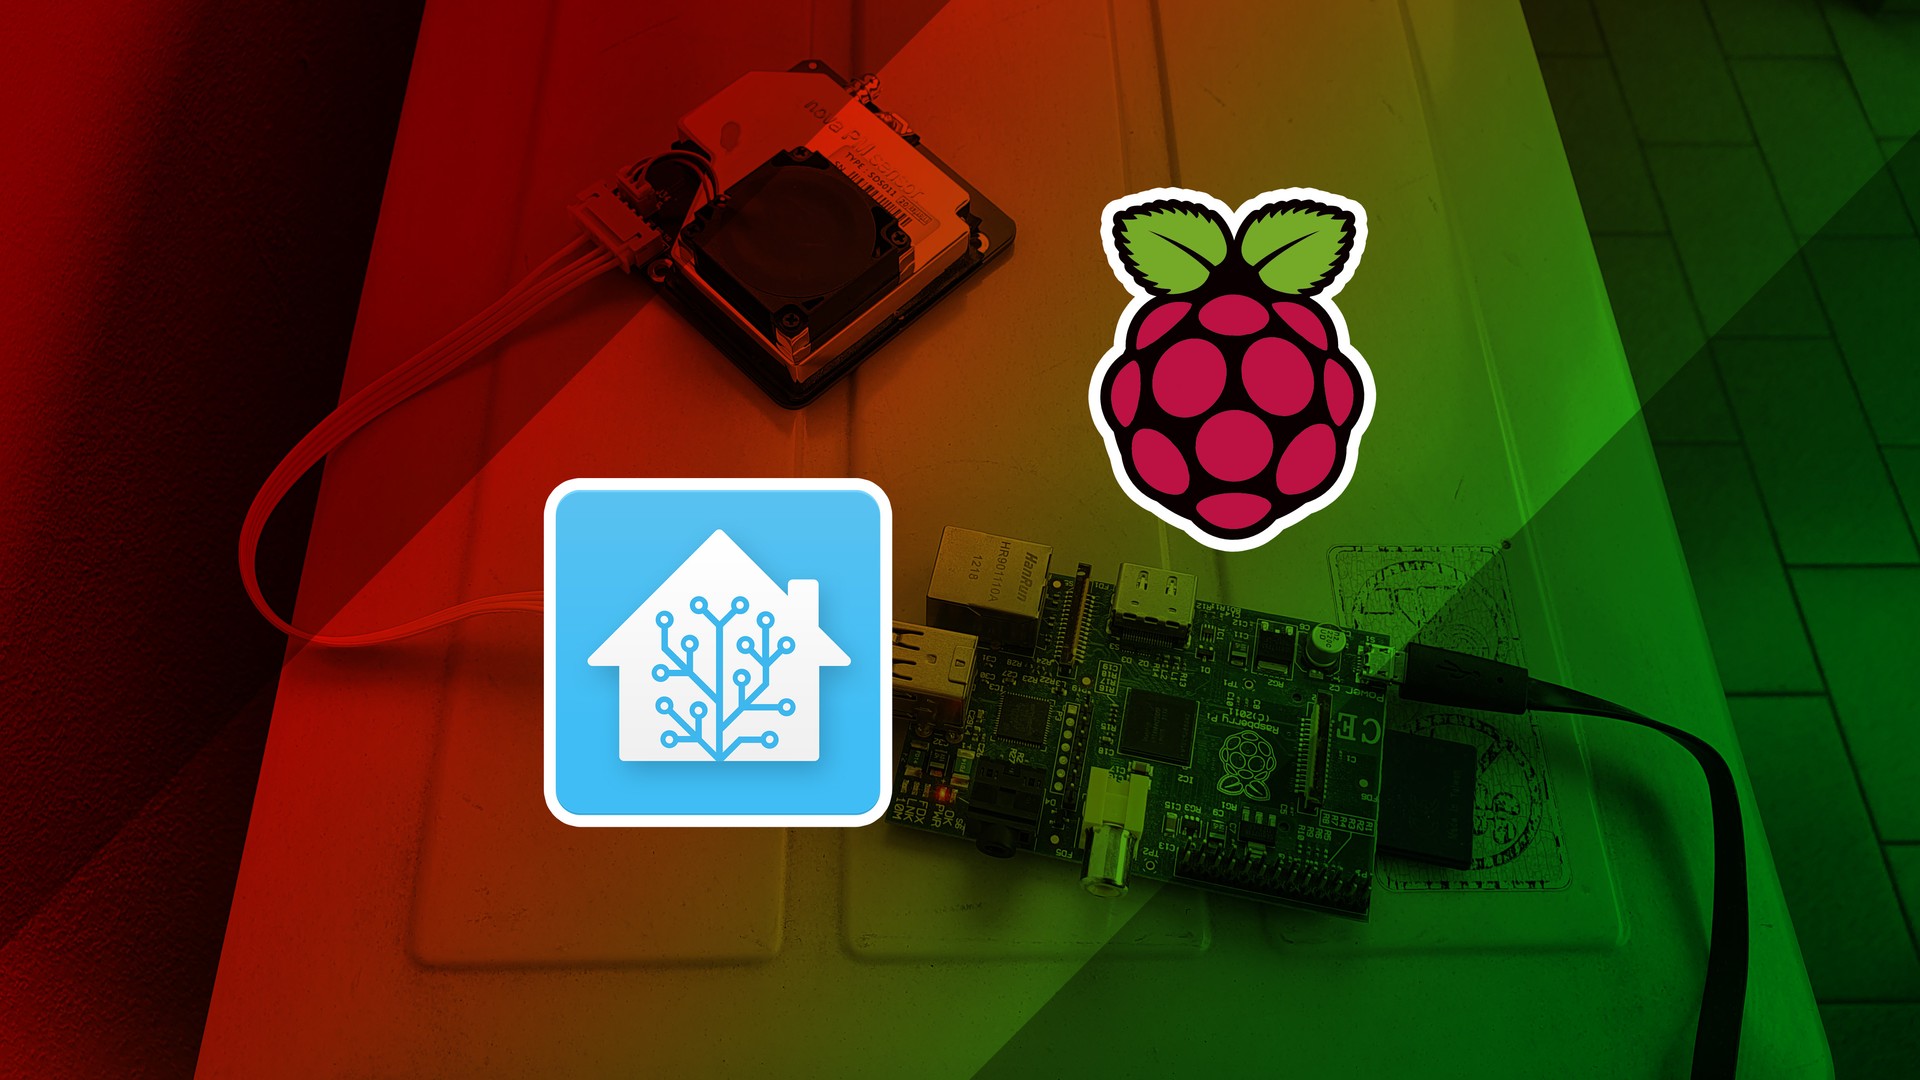 How to build an Air Quality Sensor using a Raspberry Pi